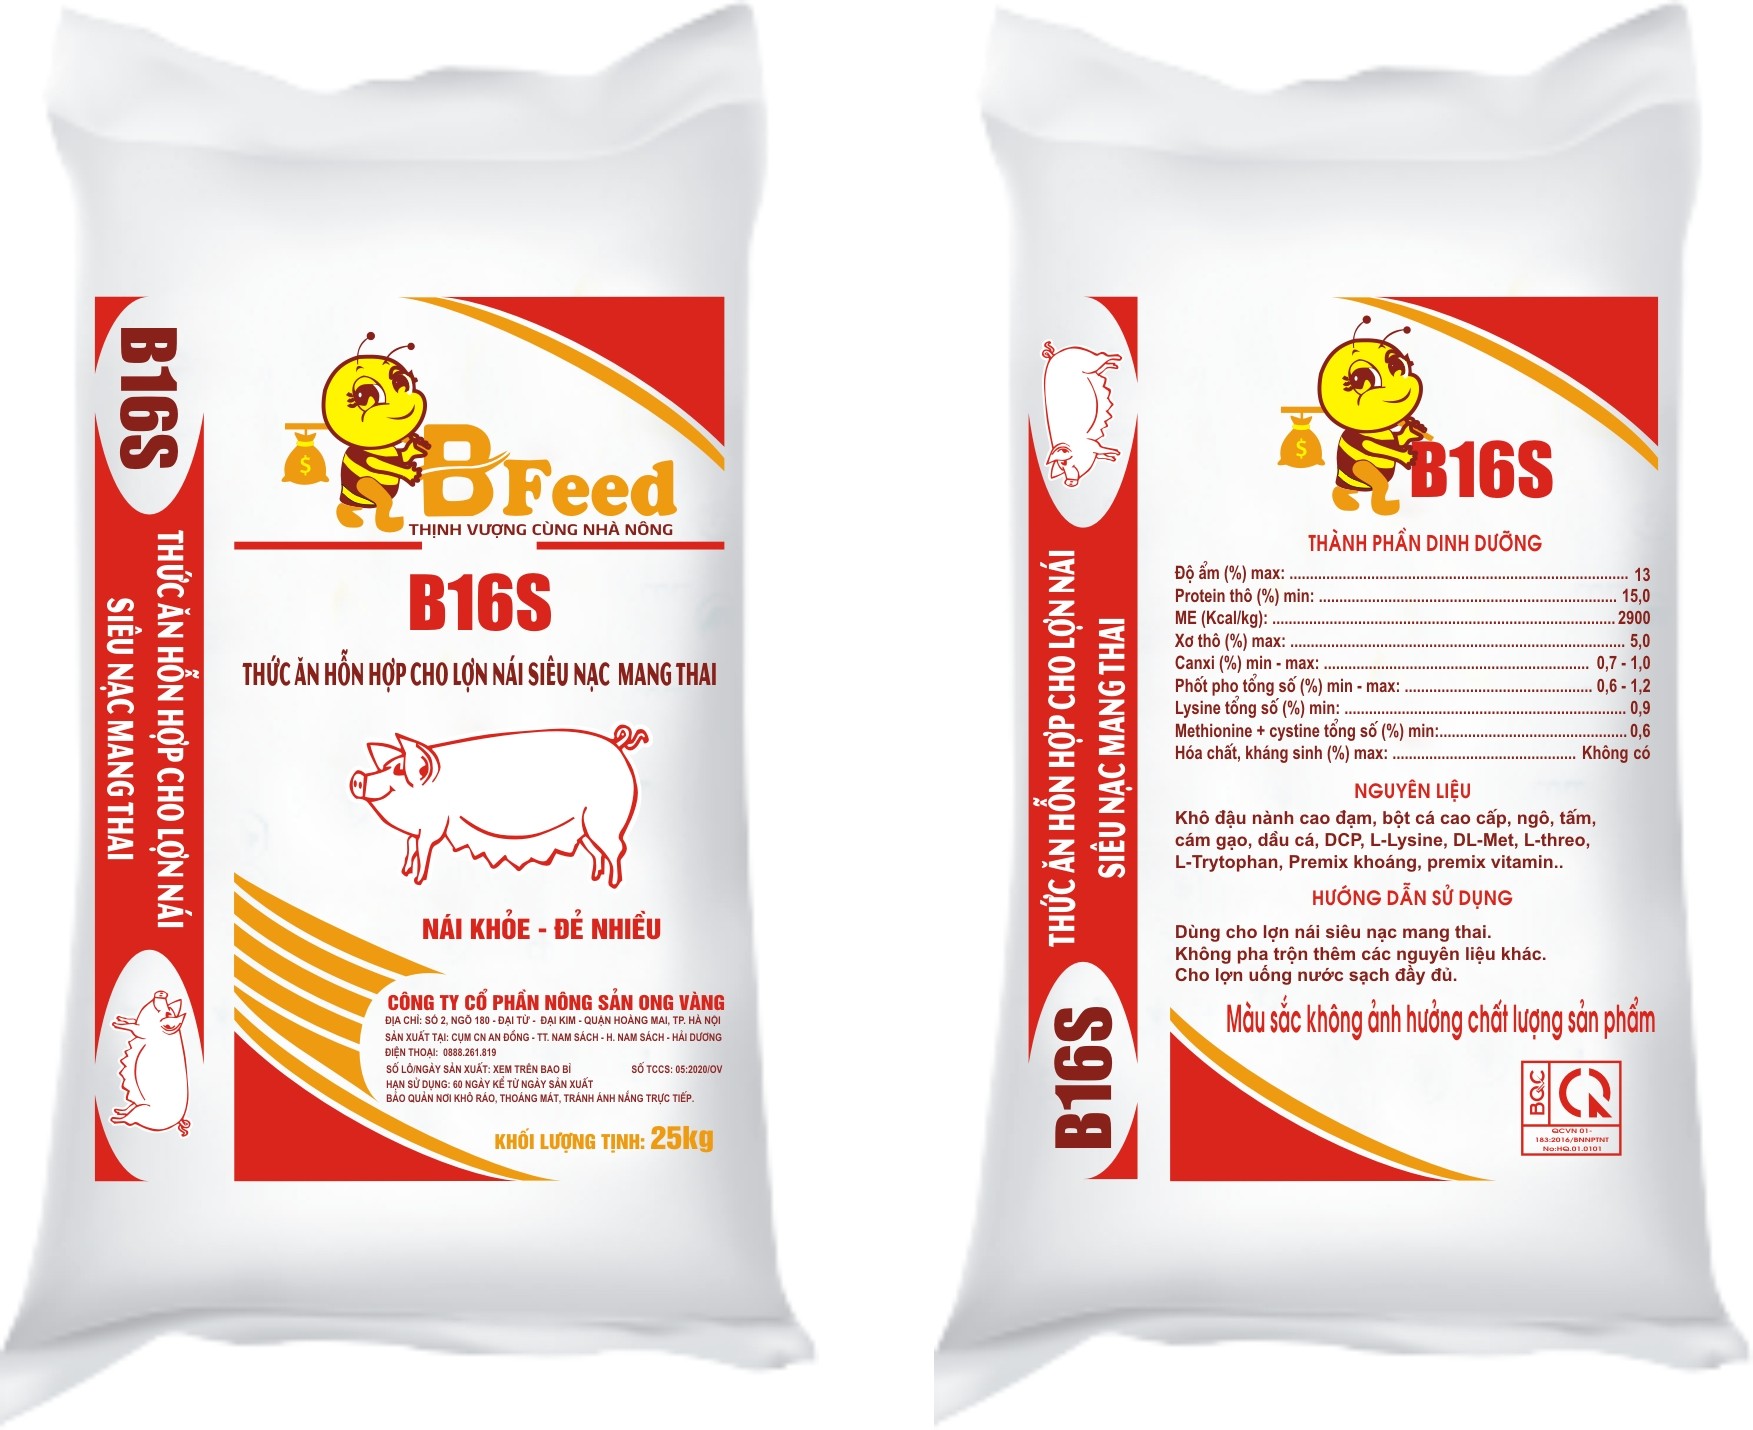 B16S - Thức ăn hỗn hợp cho lợn nái siêu nạc mang thai